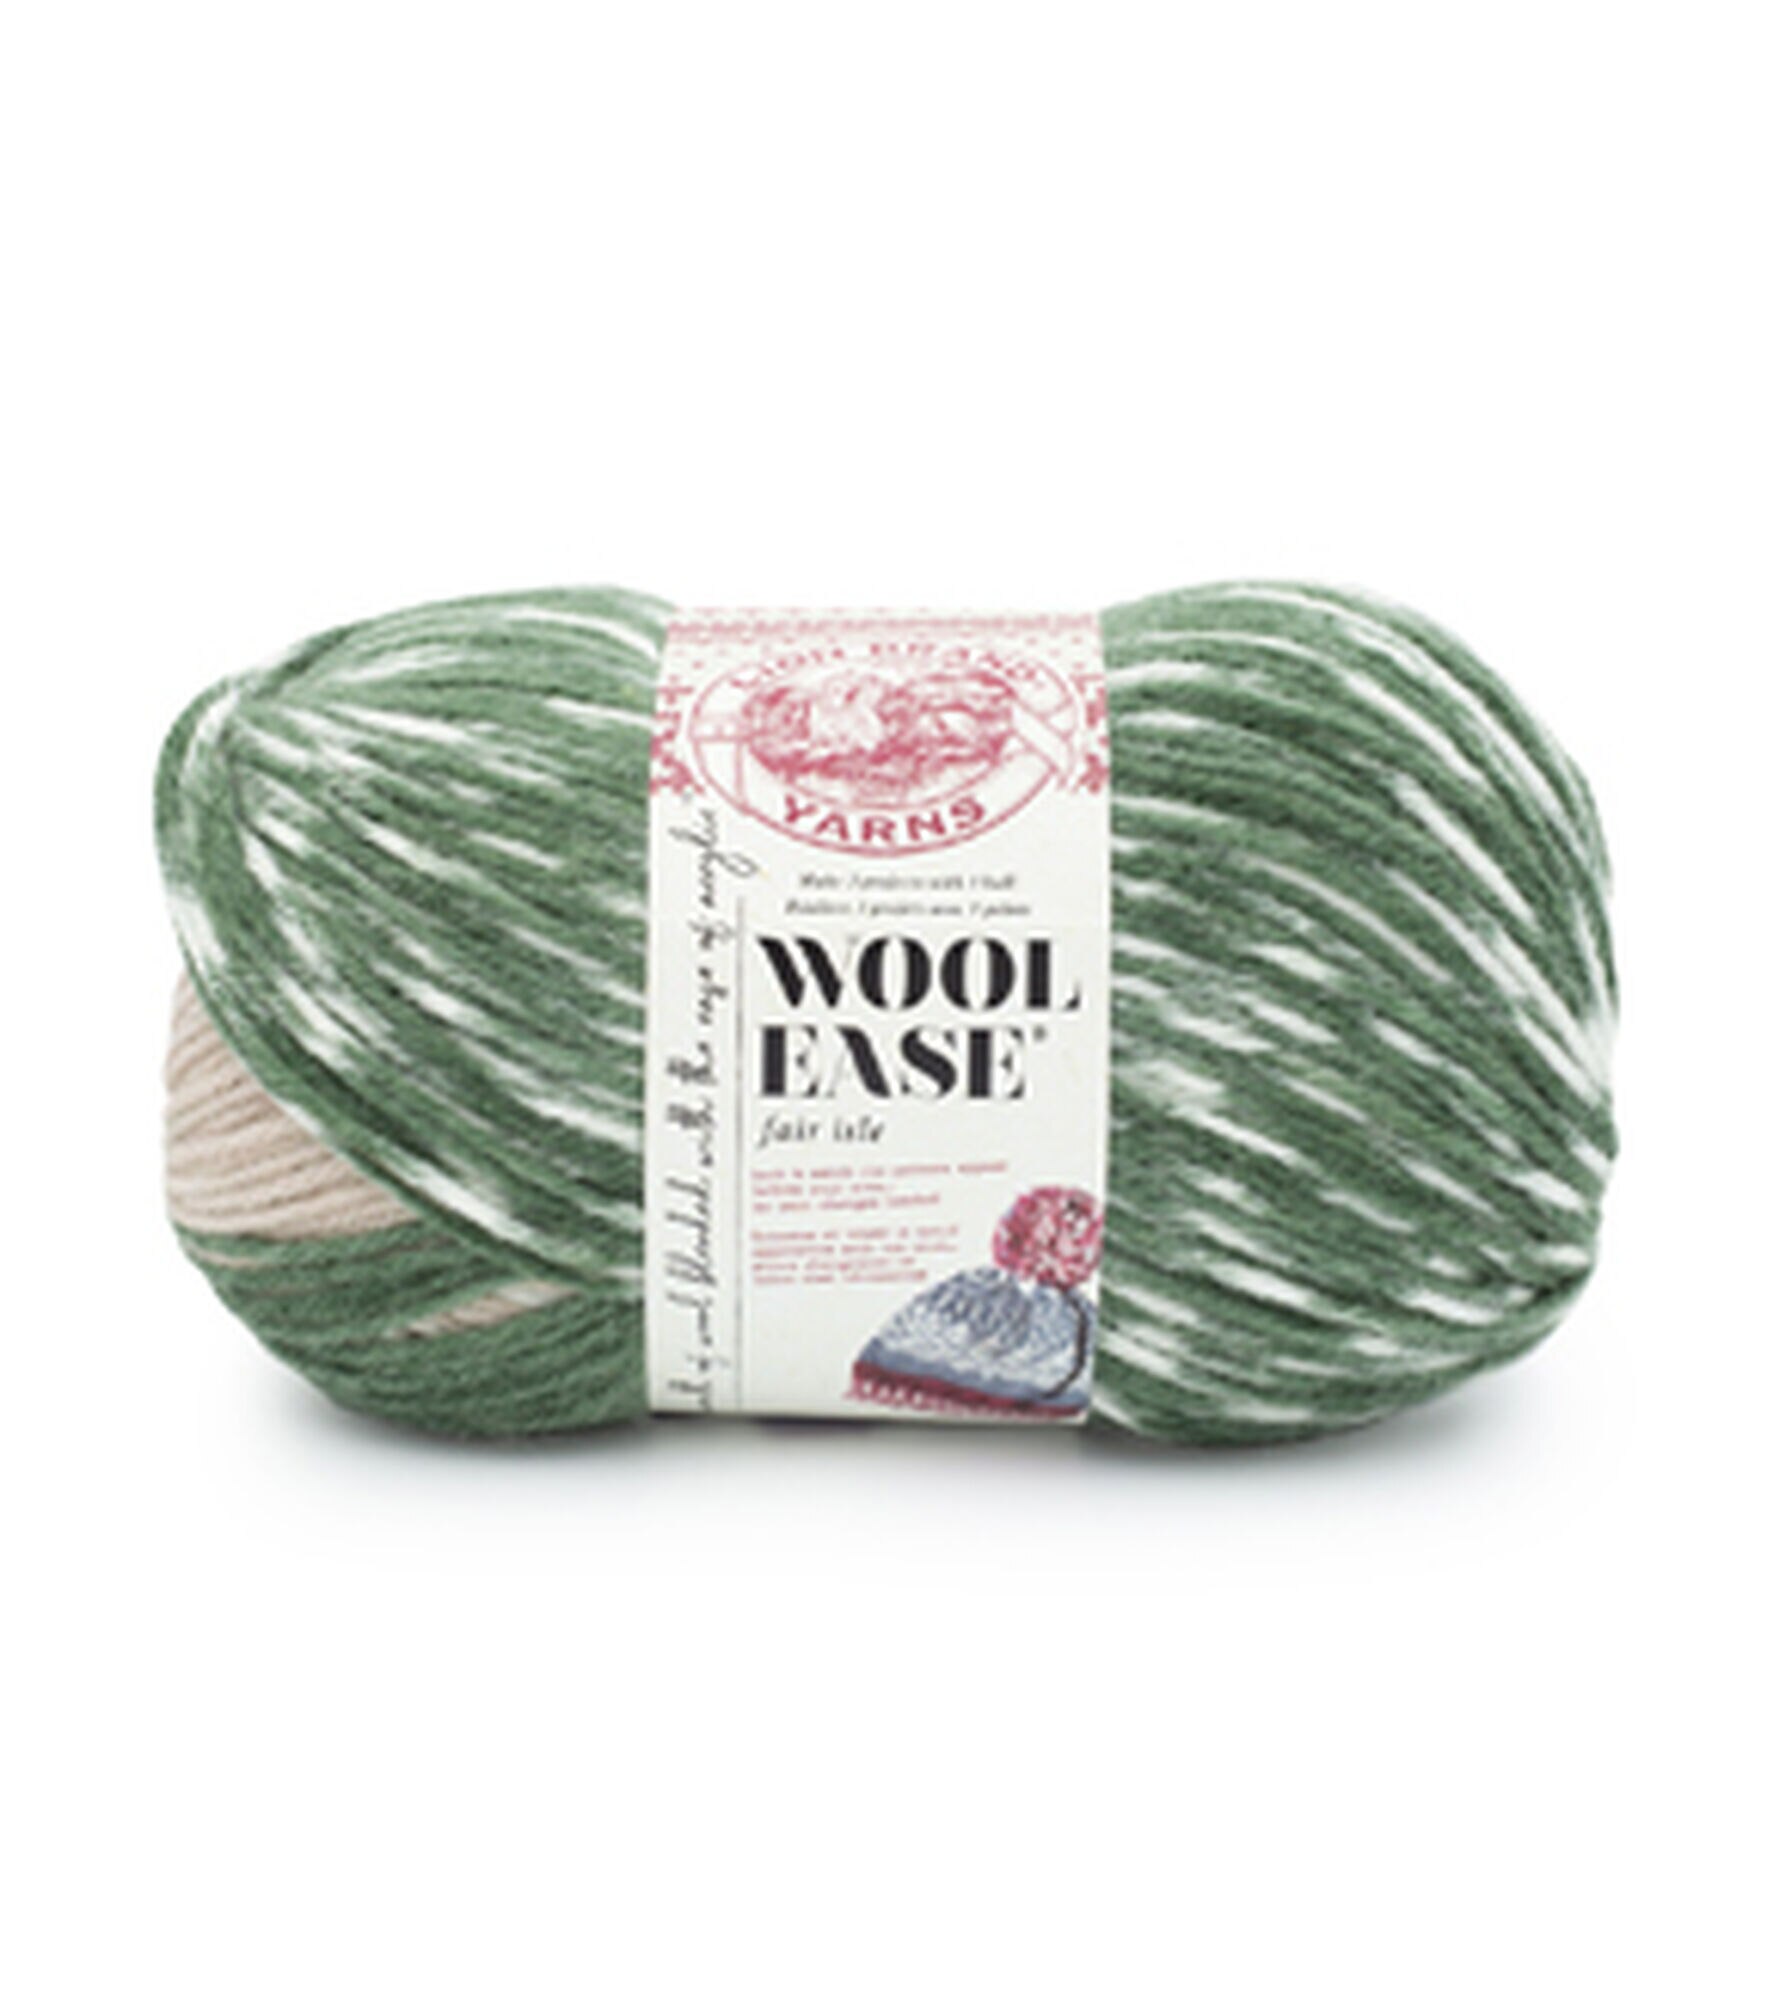  (1 Skein) Lion Brand Yarn Wool-Ease Yarn, Grey Heather